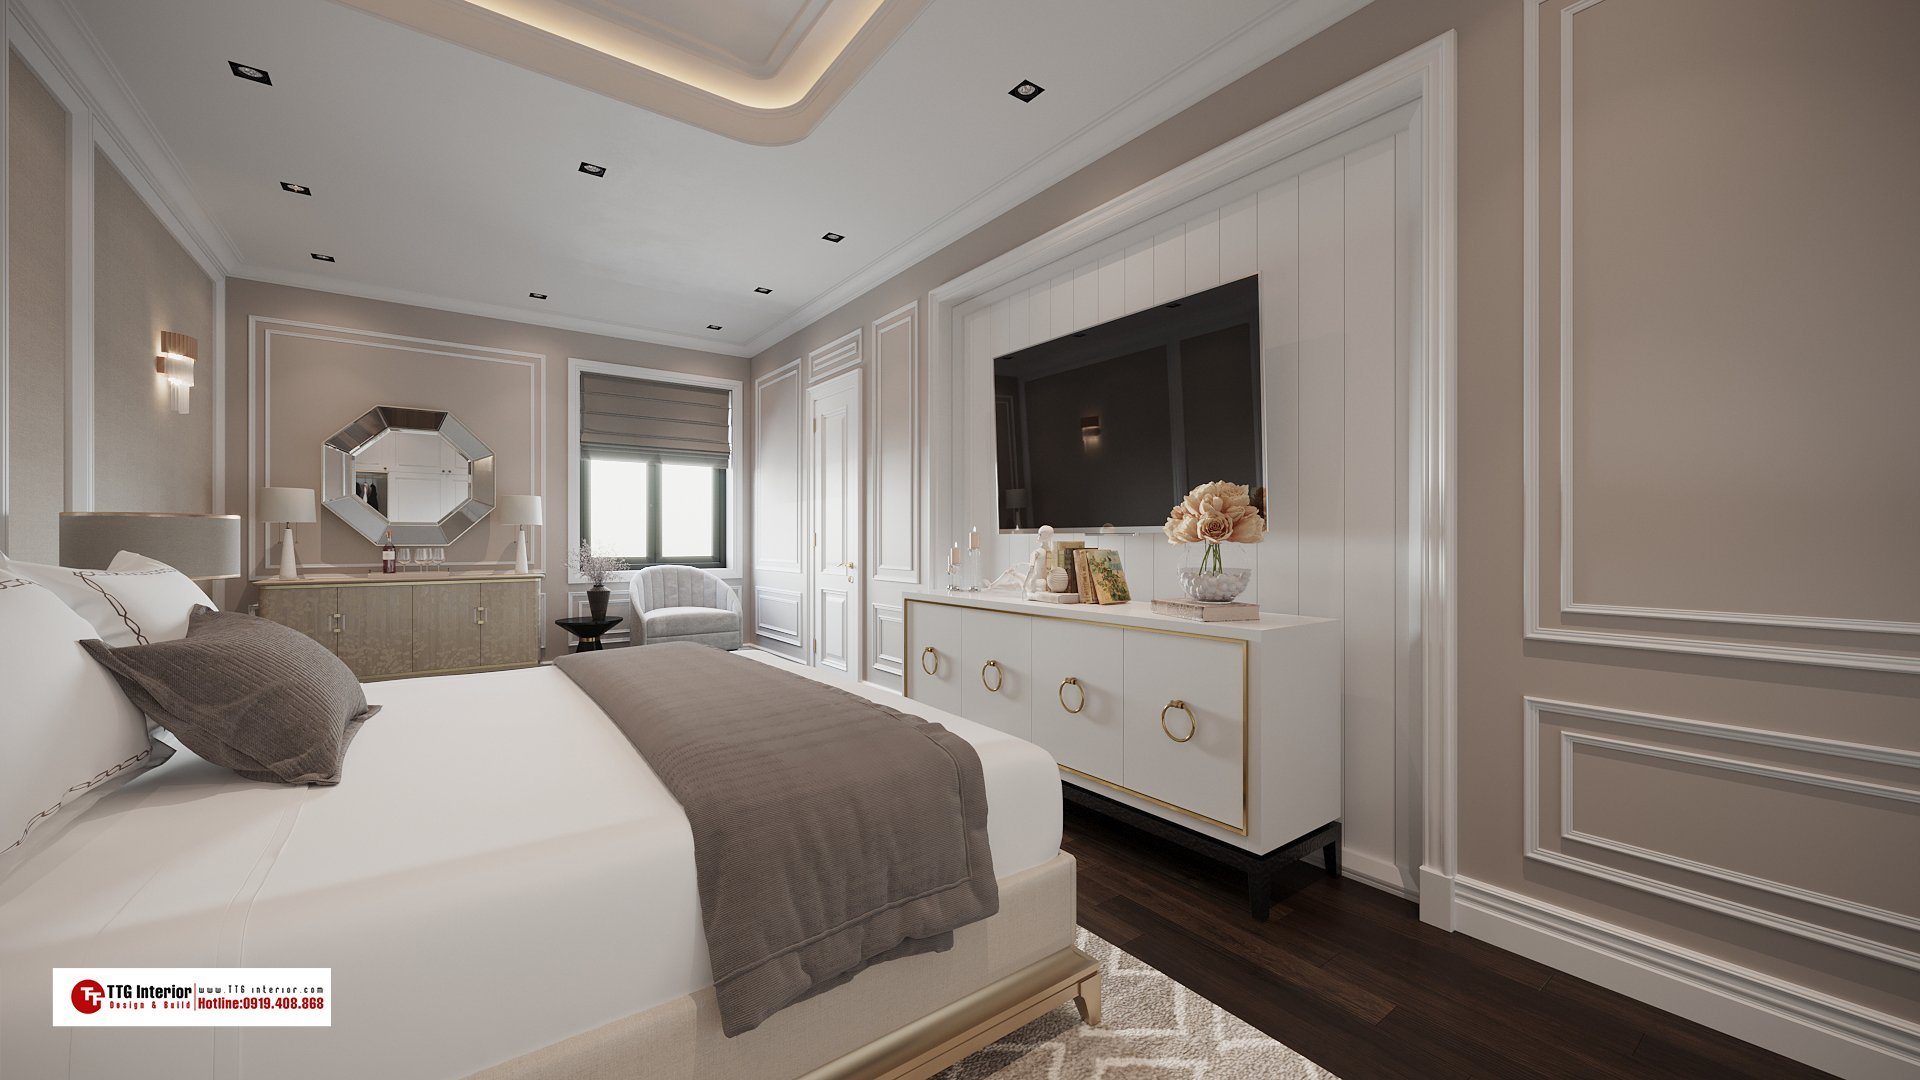 Mẫu thiết kế nội thất phòng ngủ ấm cúng cho không gian riêng trọn vẹn